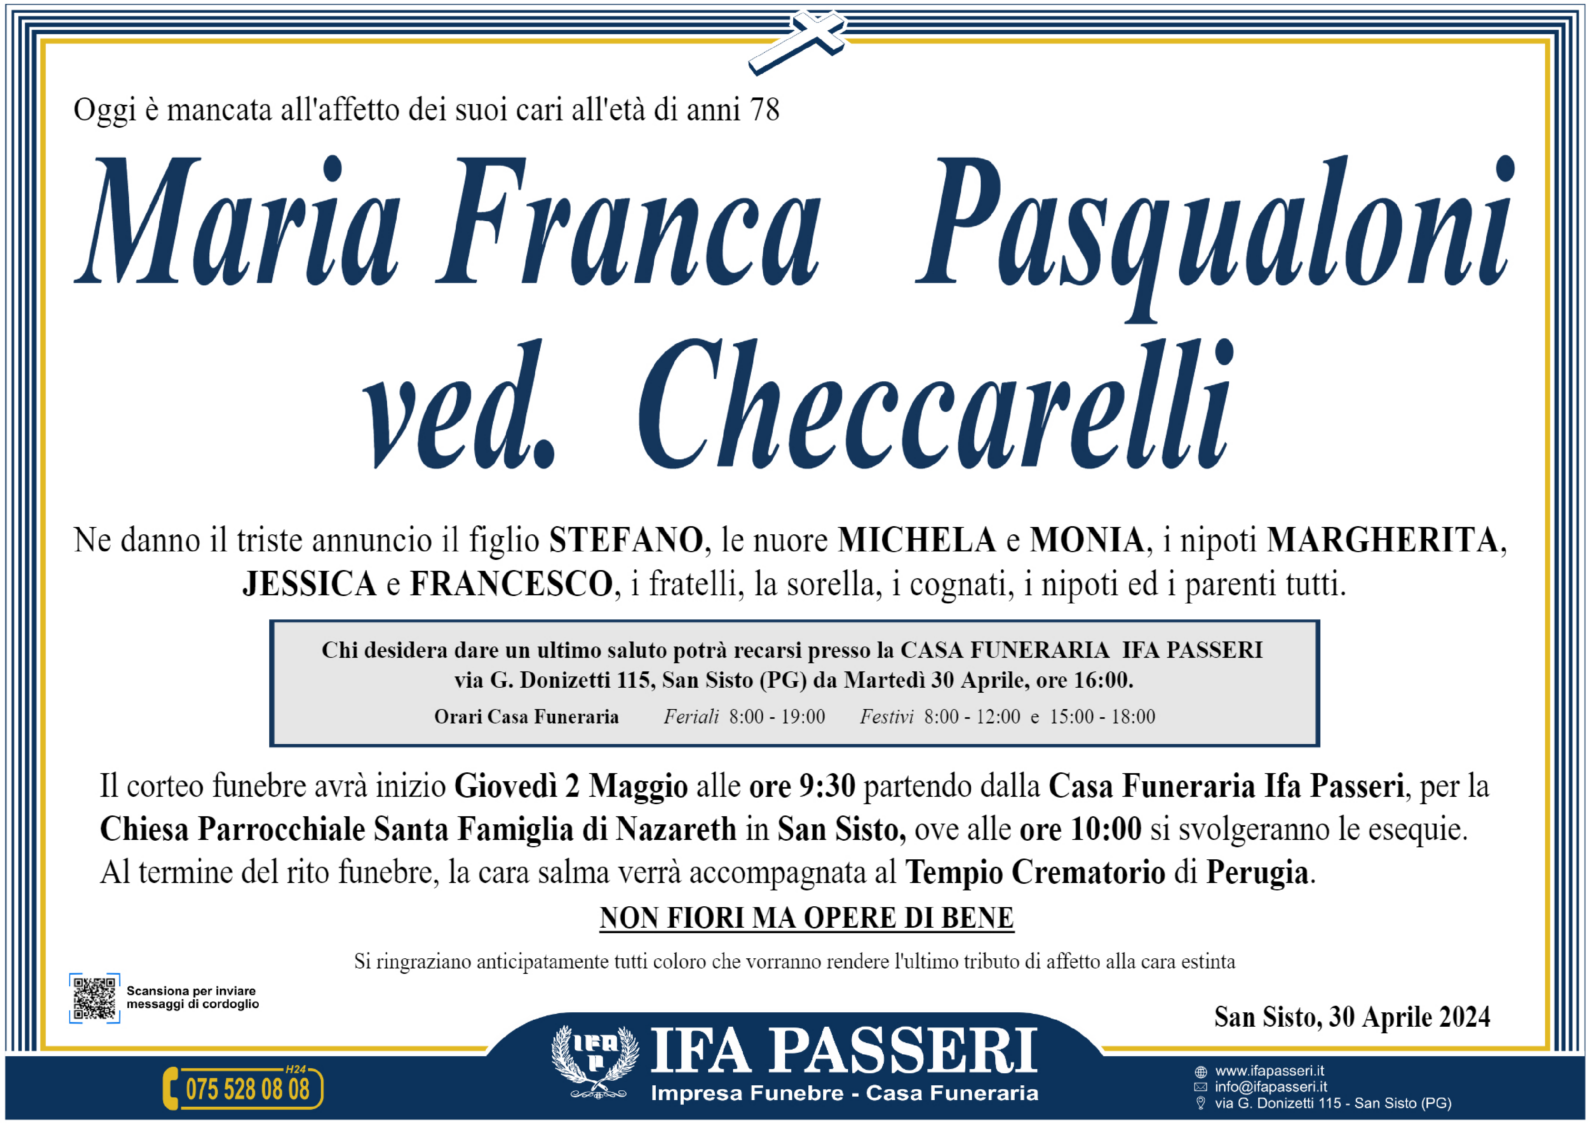 Maria Franca Pasqualoni ved. Checcarelli